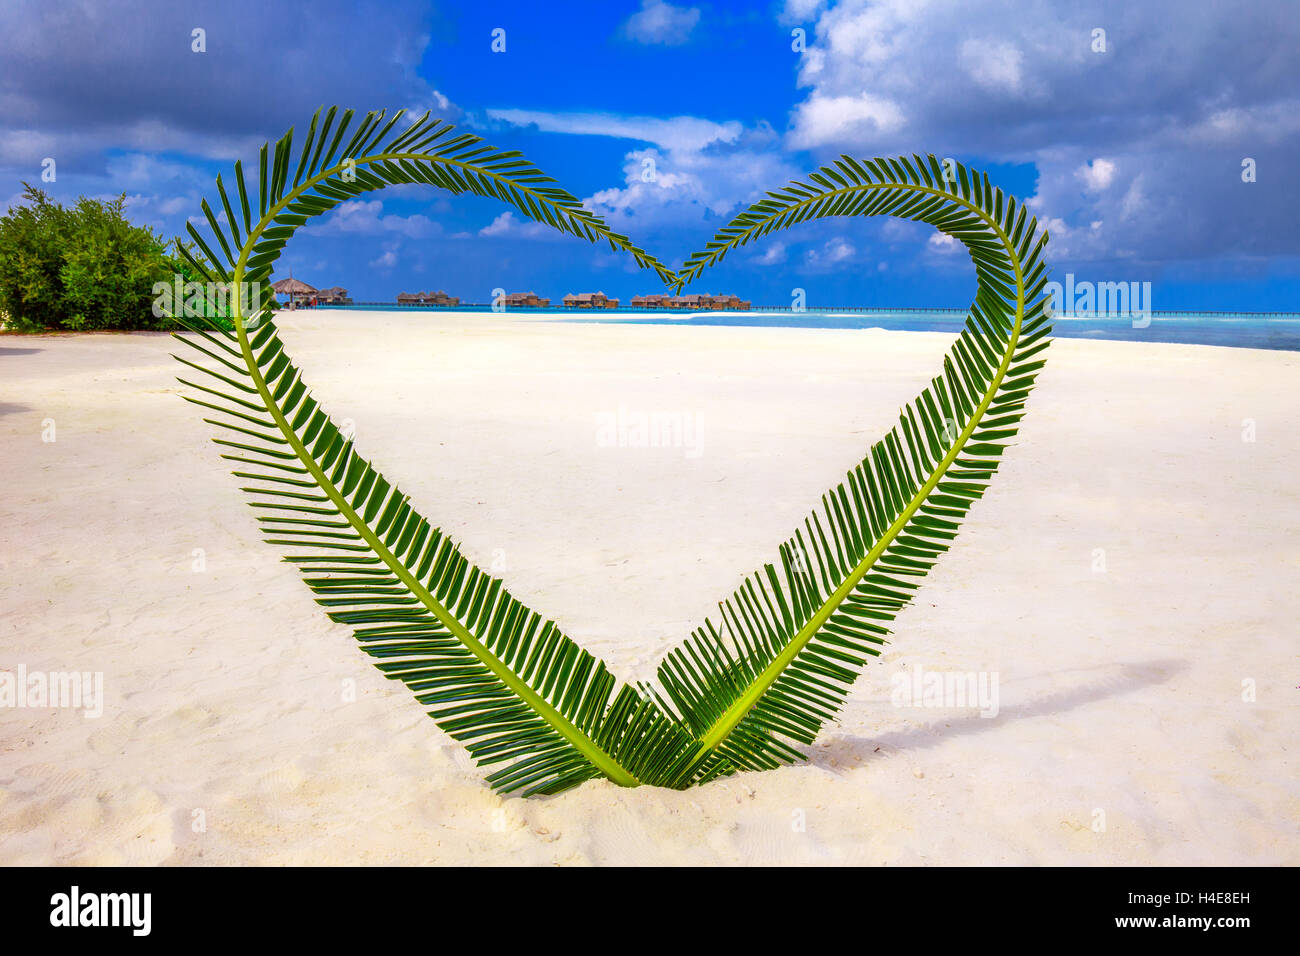 Cœur fait de feuilles de palmier sur l'île tropicale avec des bungalows sur pilotis dans l'arrière-plan. Banque D'Images